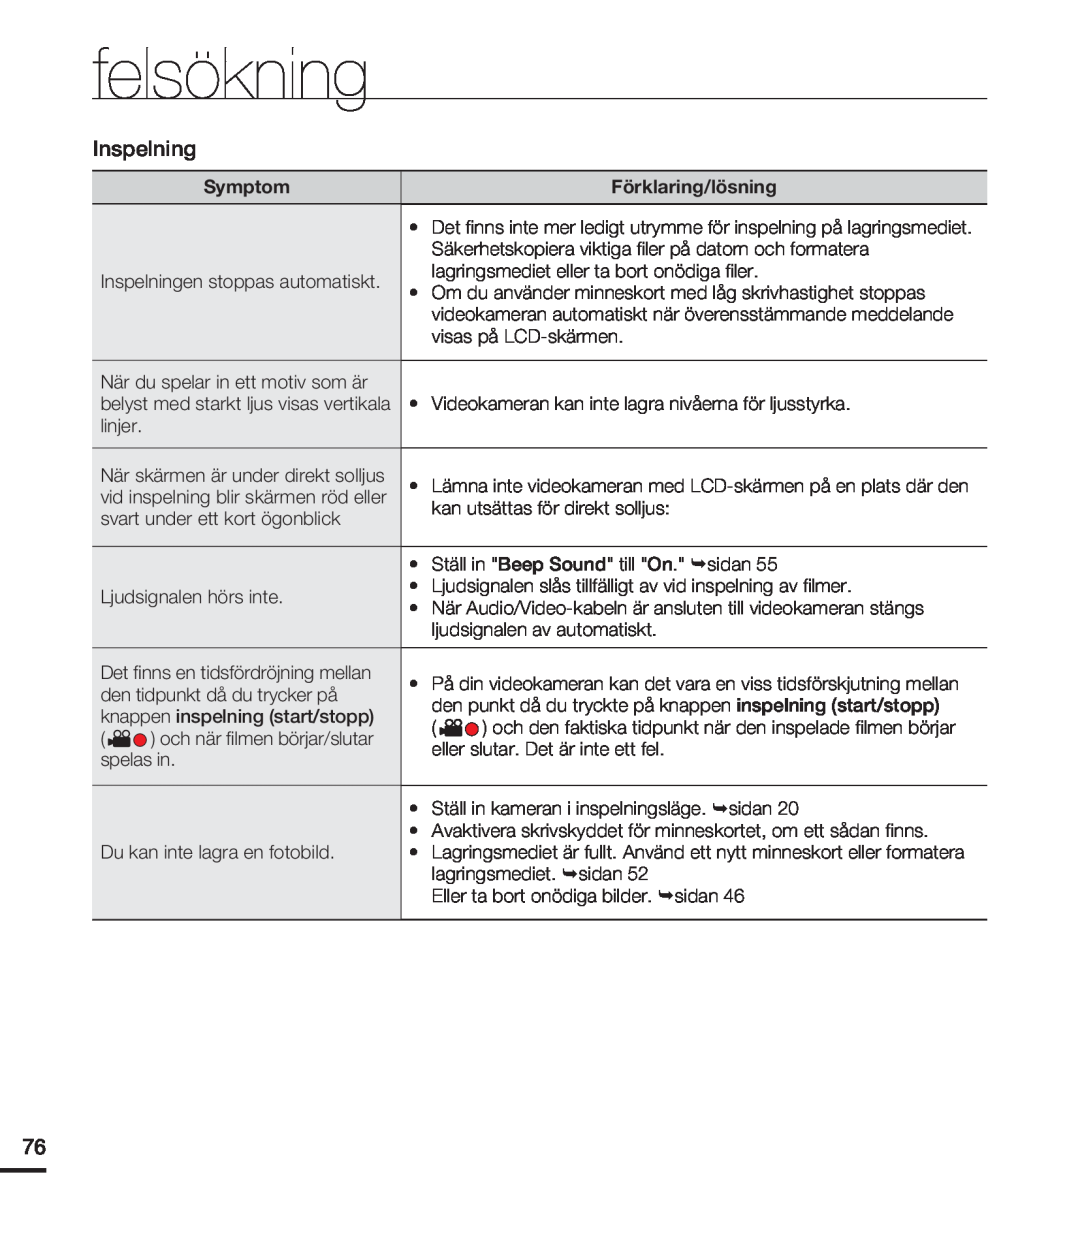 Samsung HMX-U20BP/EDC manual felsökning, Symptom, Förklaring/lösning, belyst med starkt ljus visas vertikala, sidan 